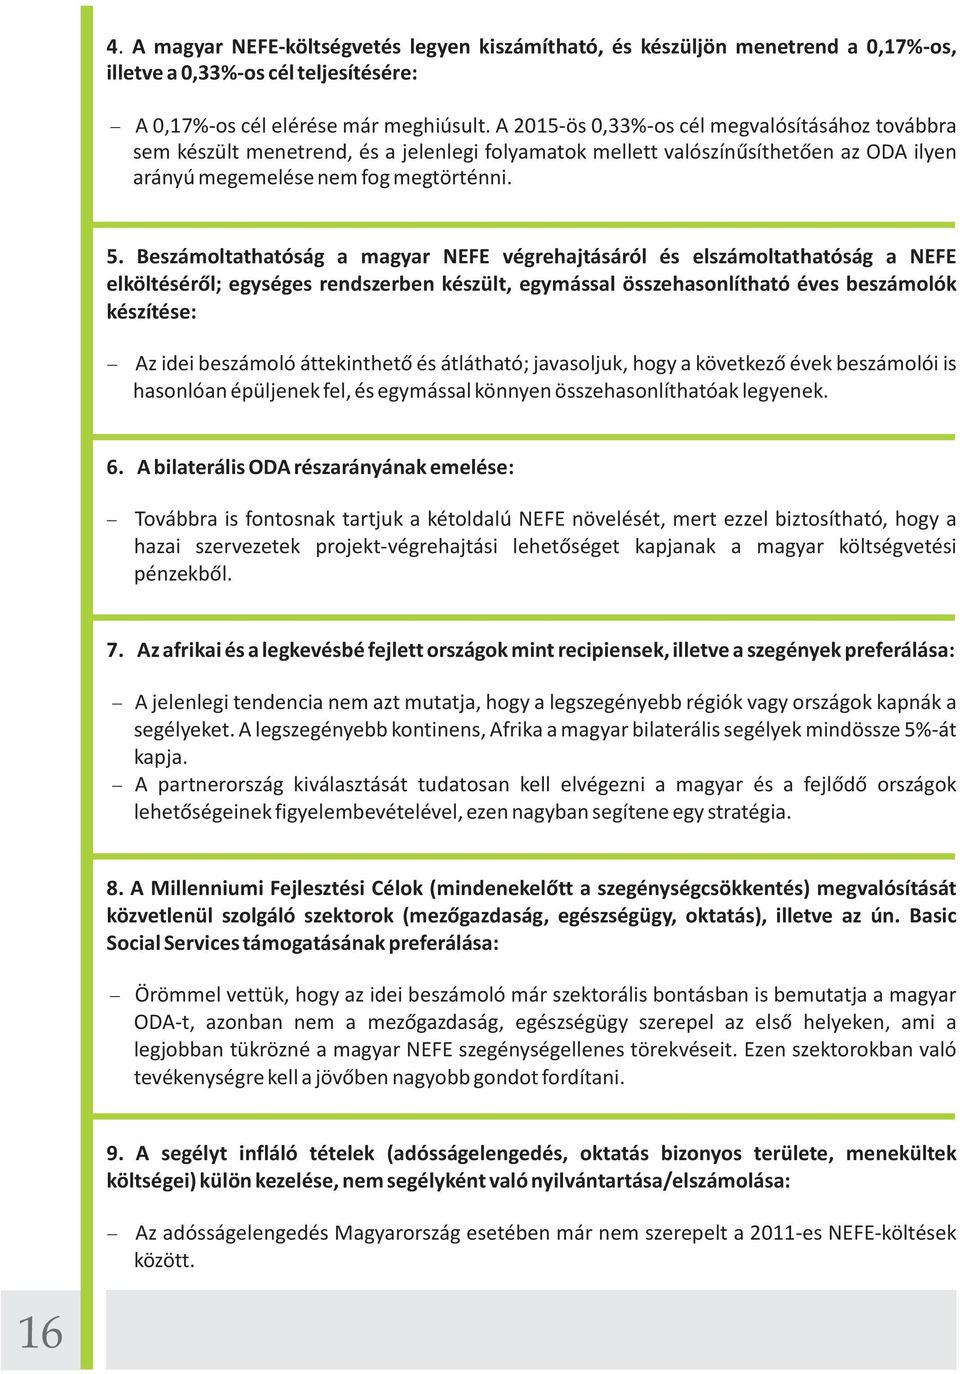 Beszámoltathatóság a magyar NEFE végrehajtásáról és elszámoltathatóság a NEFE elköltéséről; egységes rendszerben készült, egymással összehasonlítható éves beszámolók készítése: Az idei beszámoló